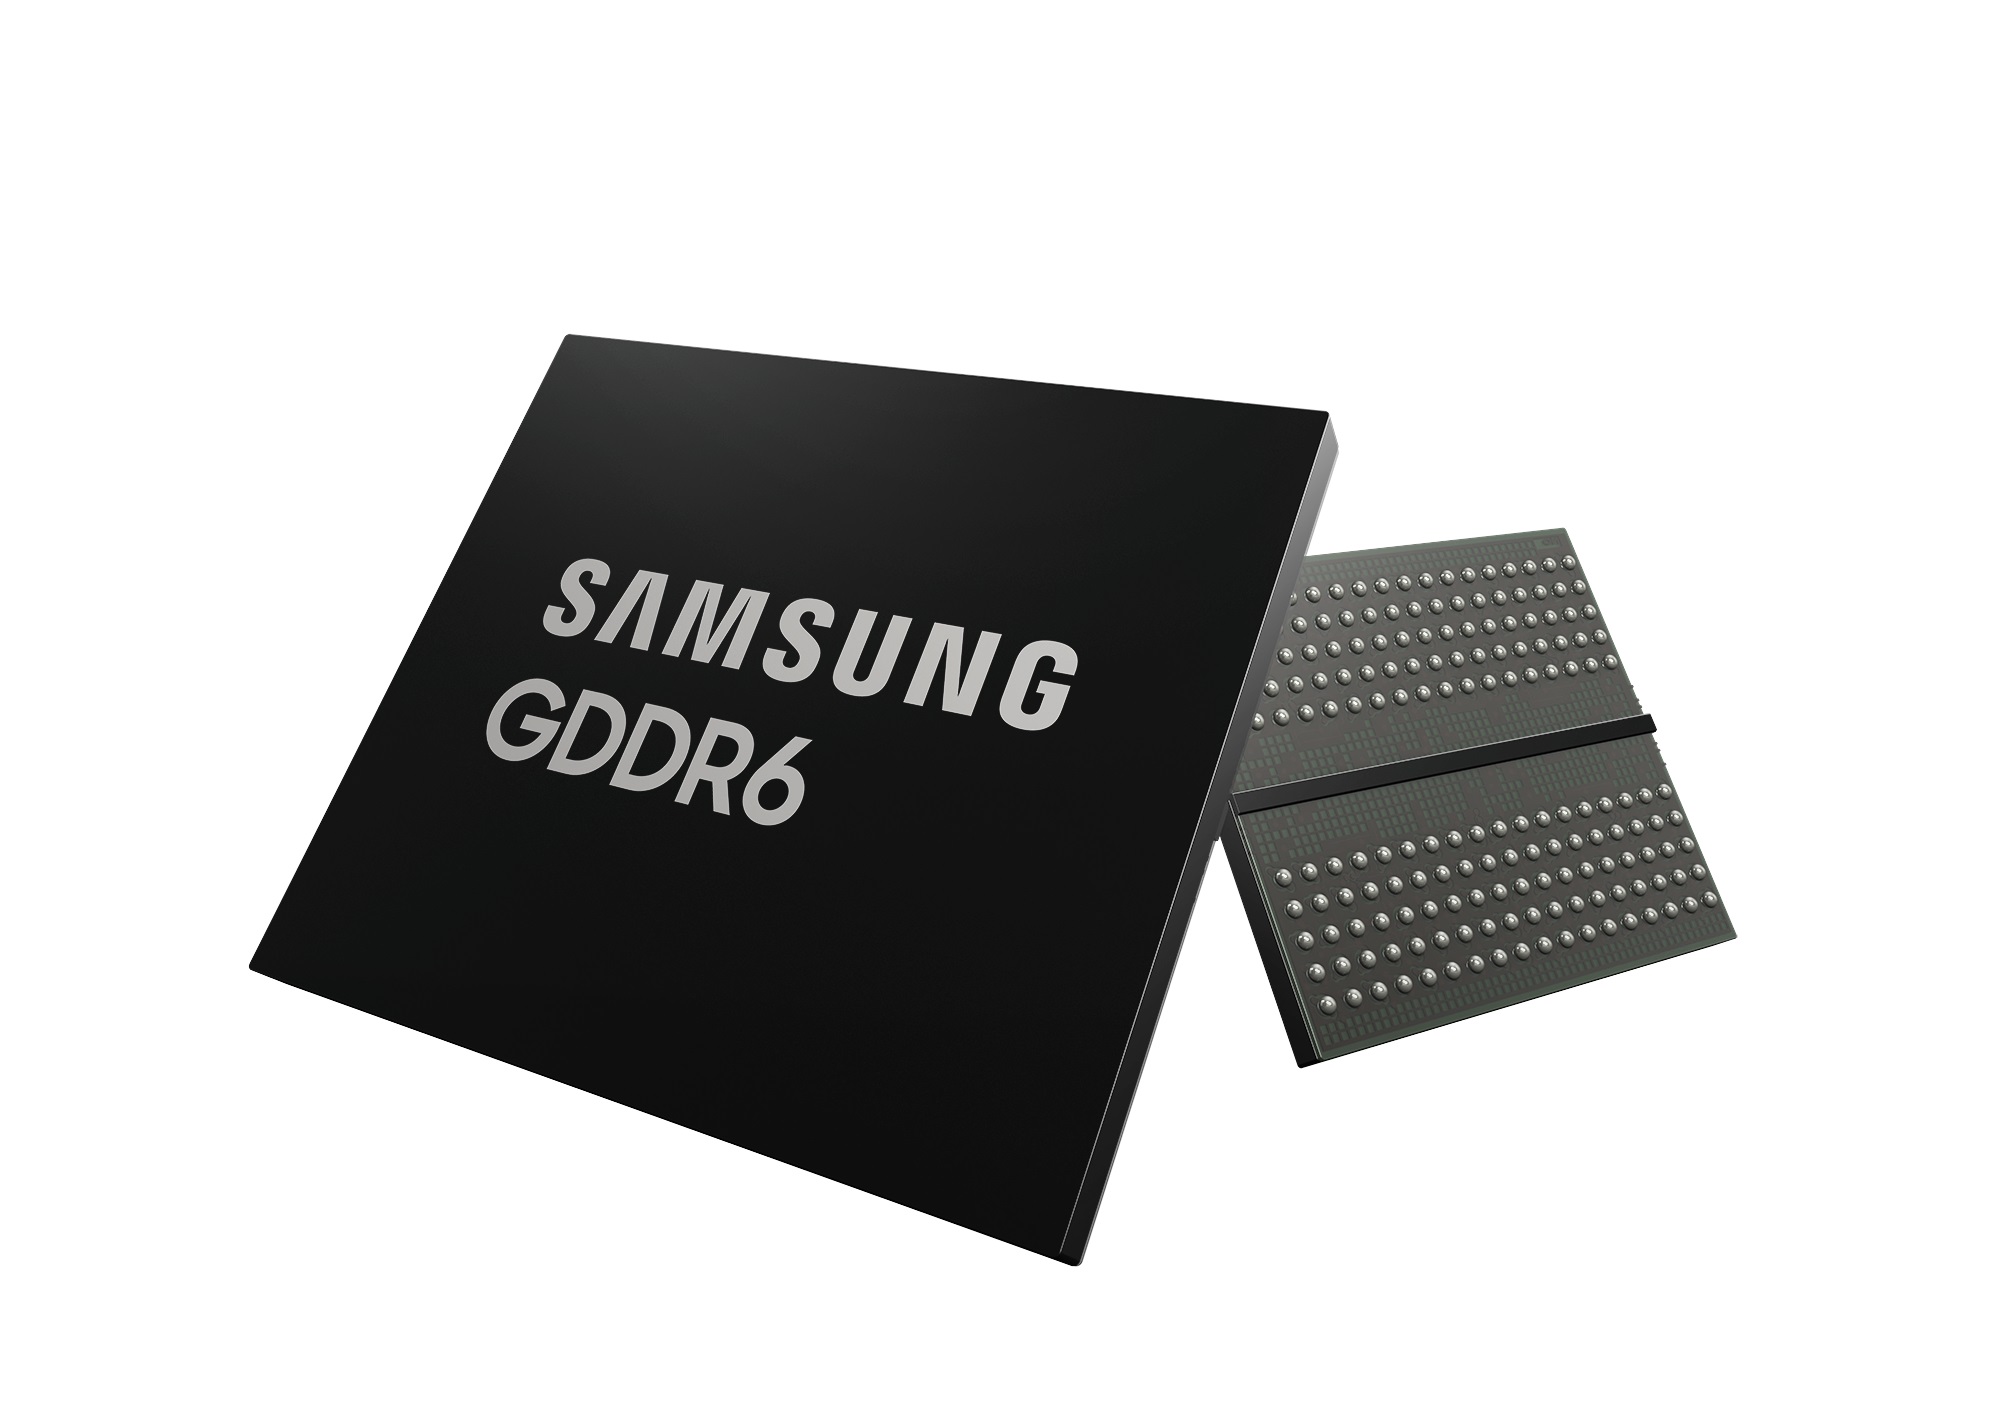 Samsung GDDR6 24 Gb/s